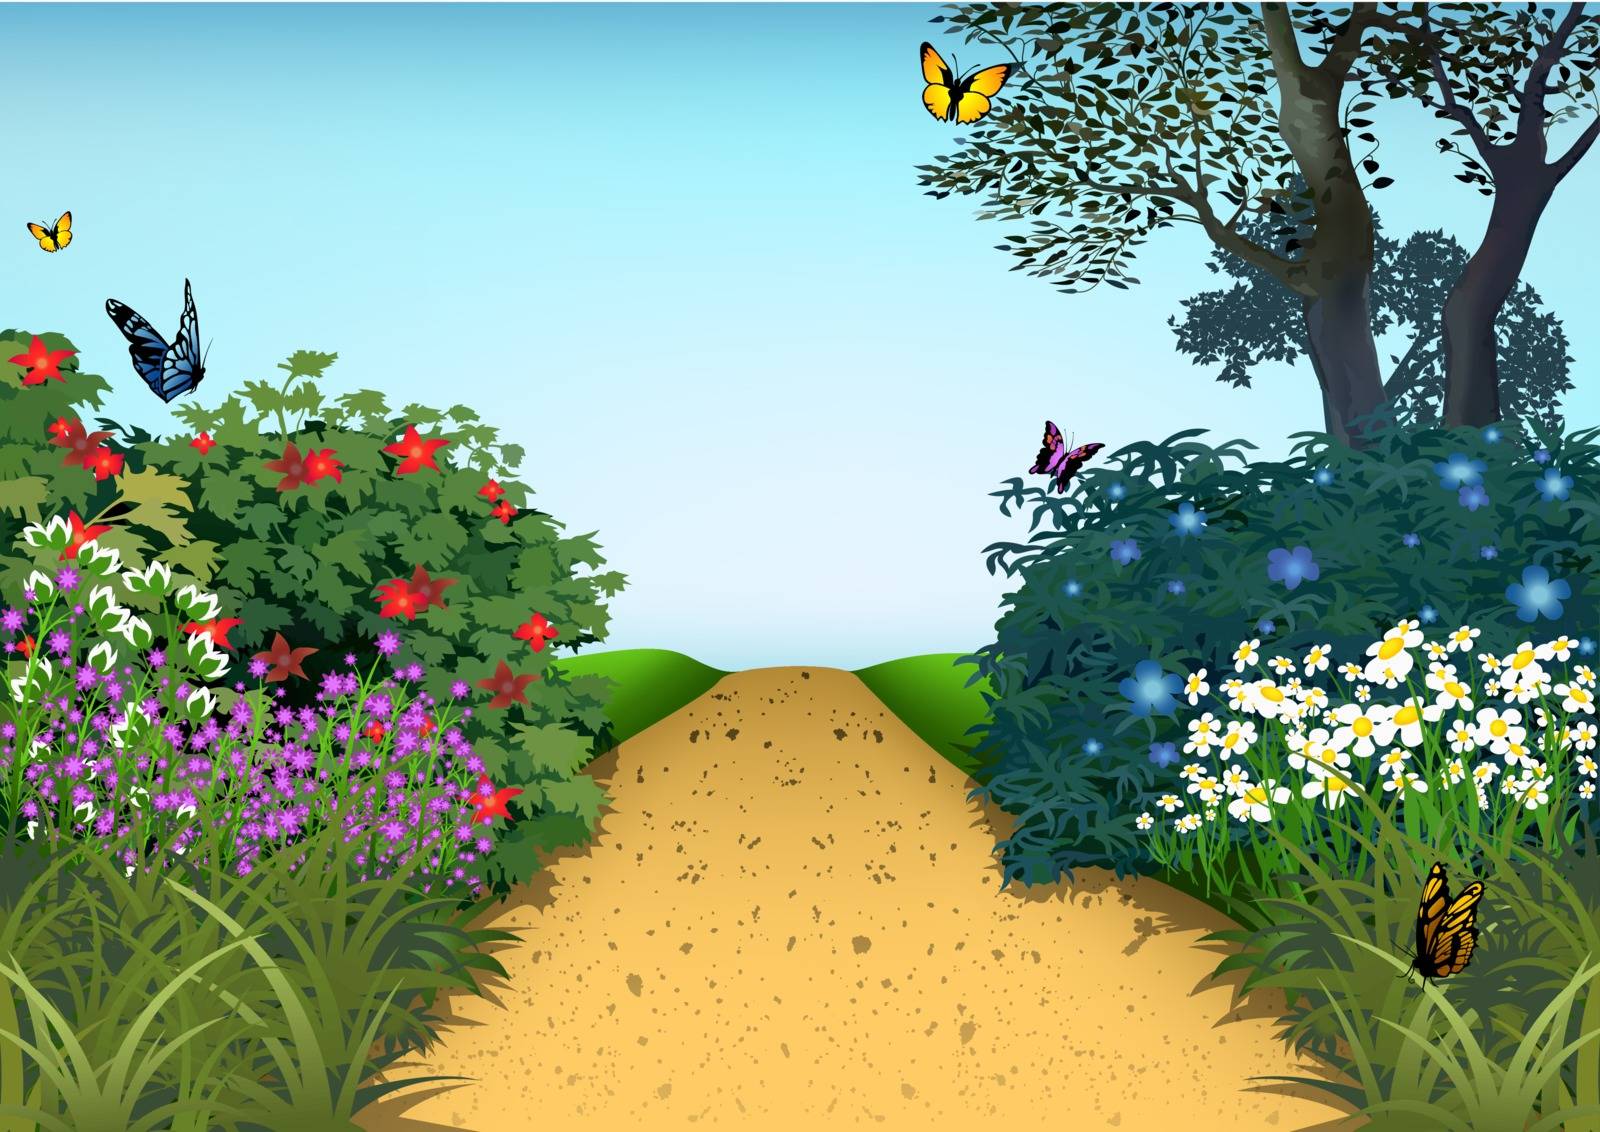 Summer Garden - Cartoon Background Illustration, Vector